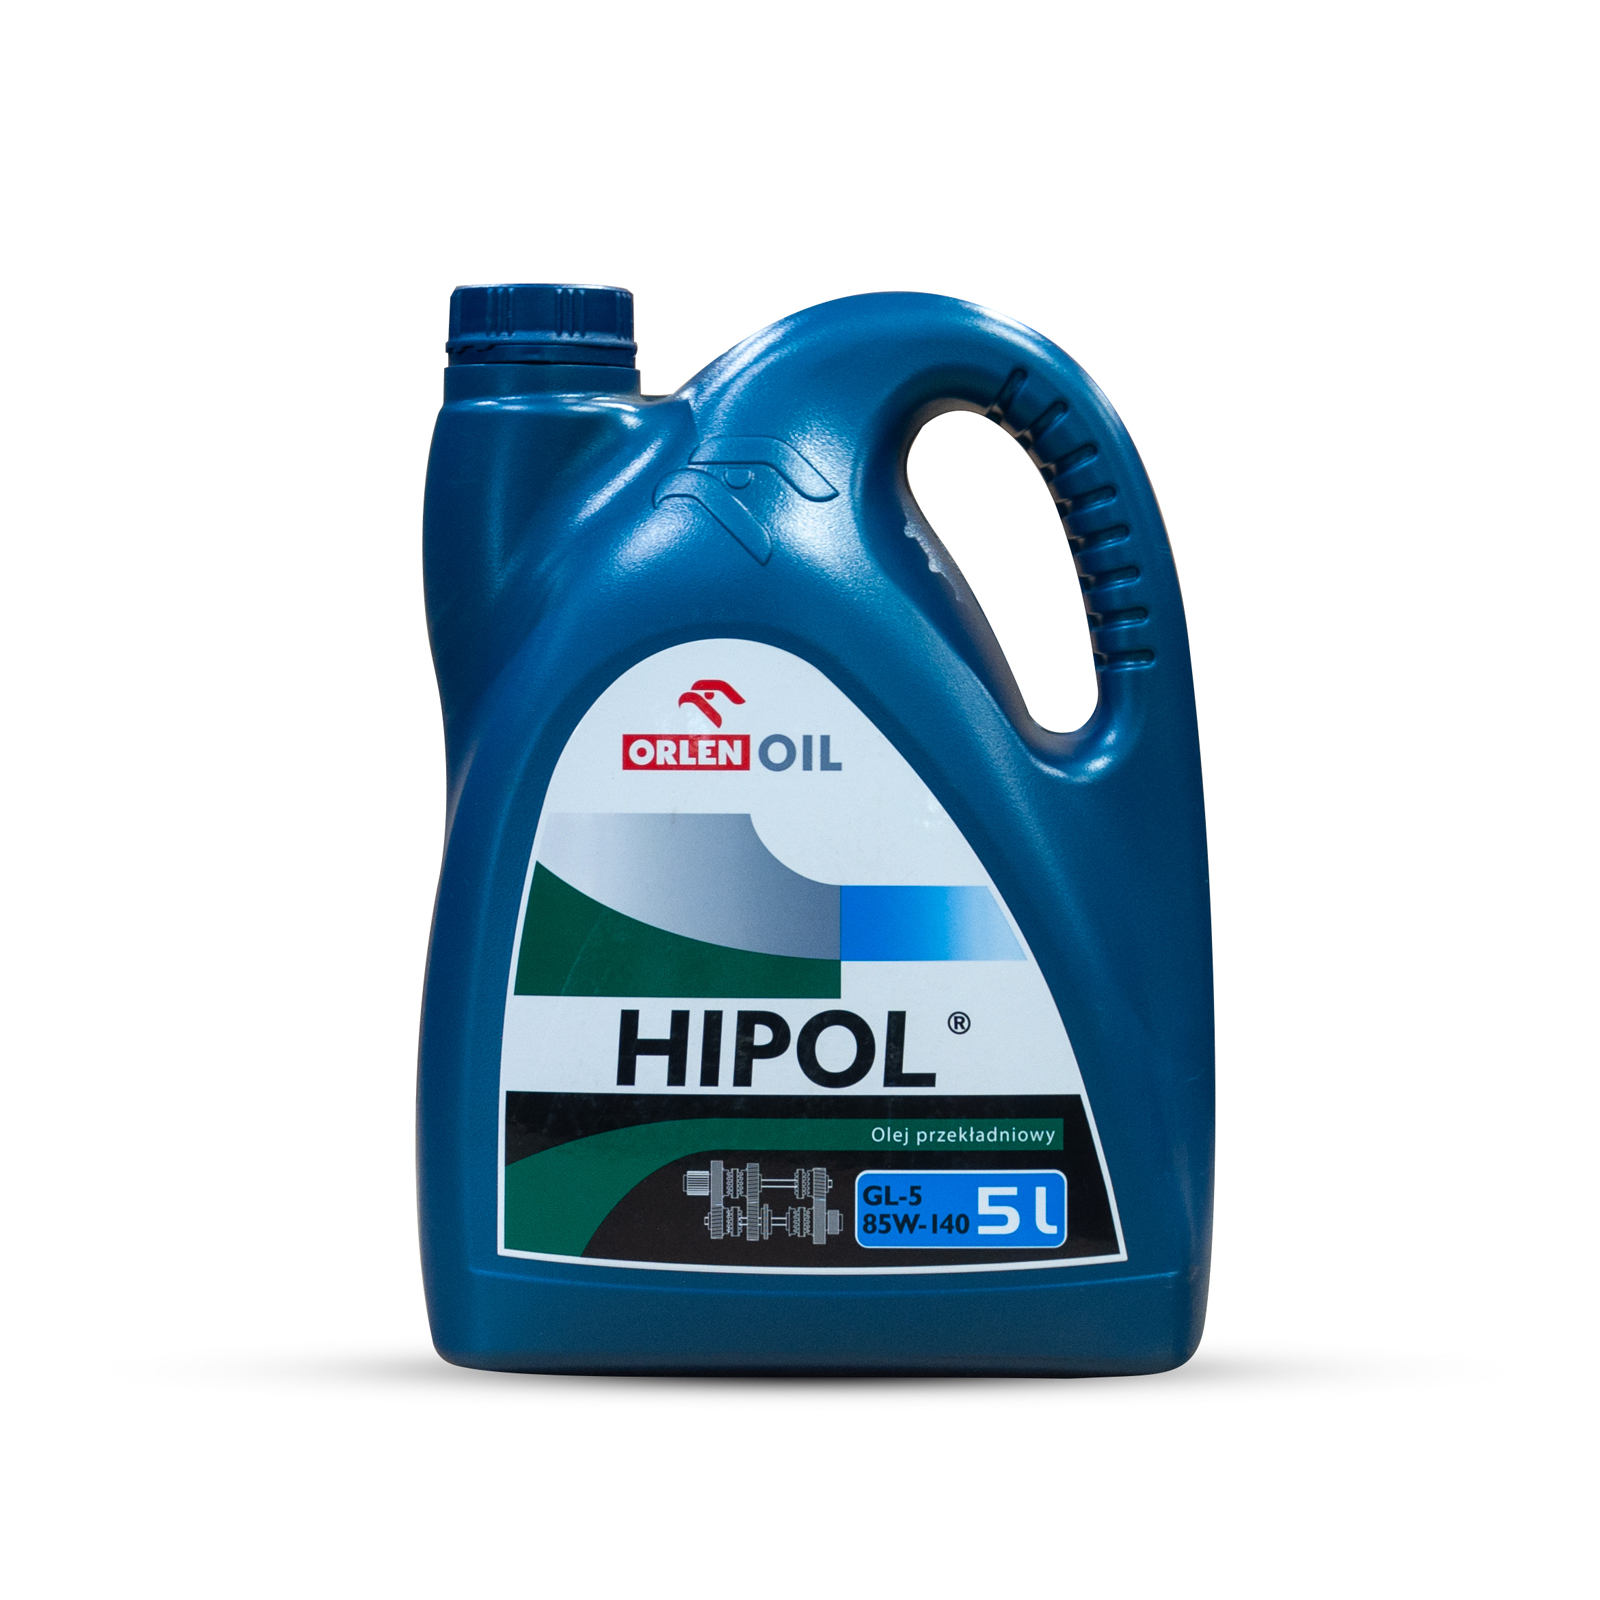 Orlen Oil Hipol 85W140 GL5 Минеральное трансмиссионное масло для МКПП